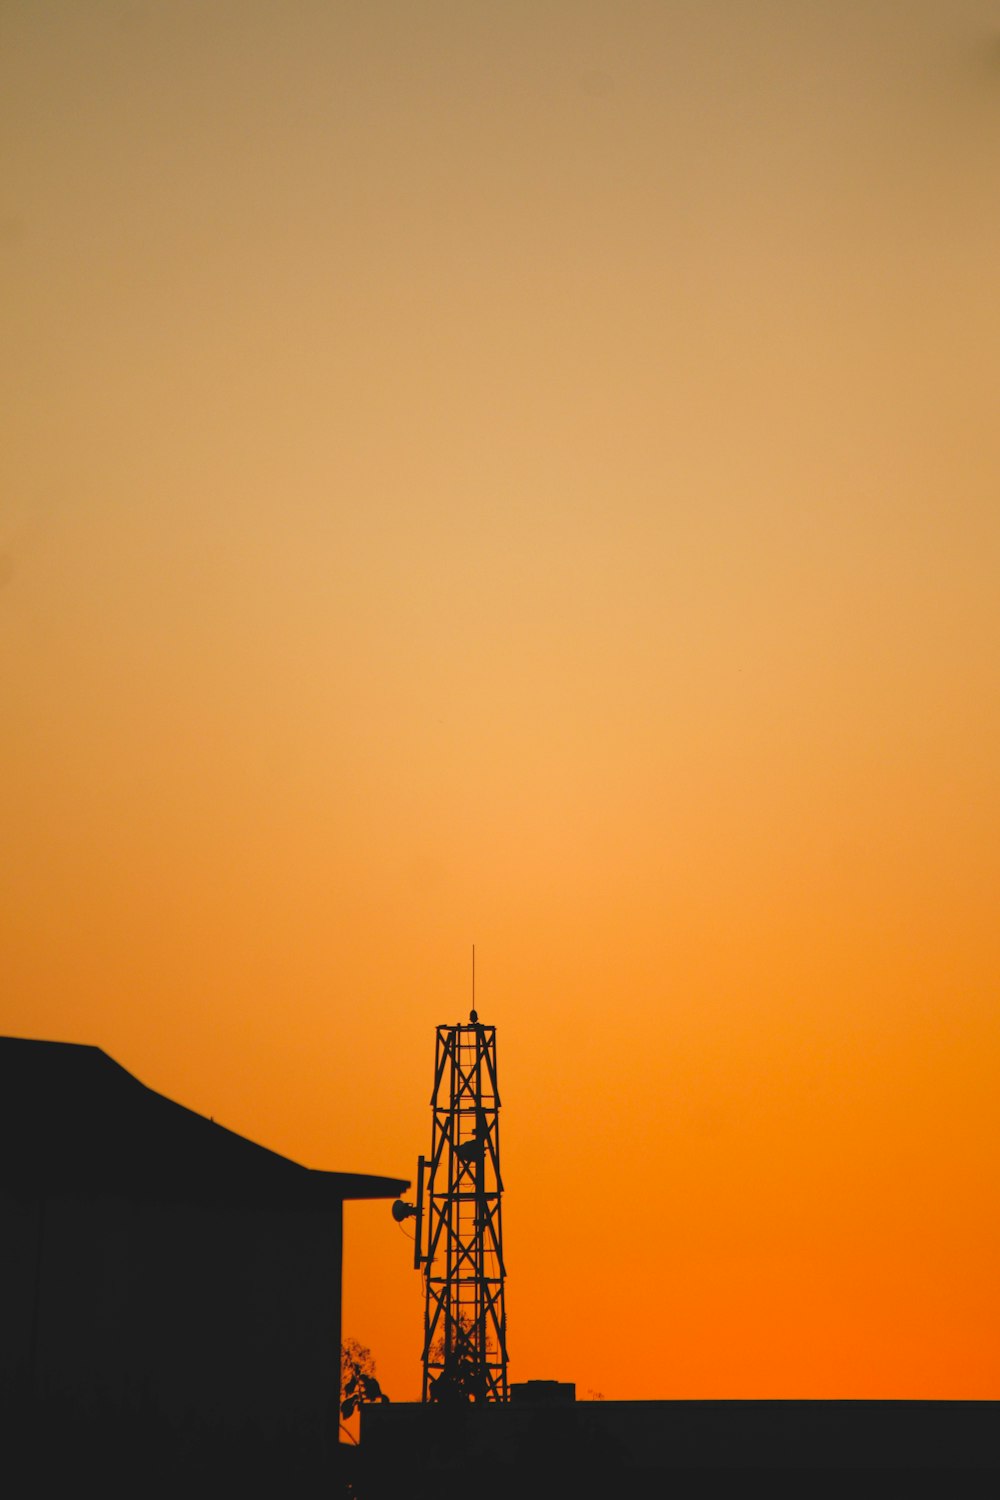 silueta de la torre durante la puesta de sol